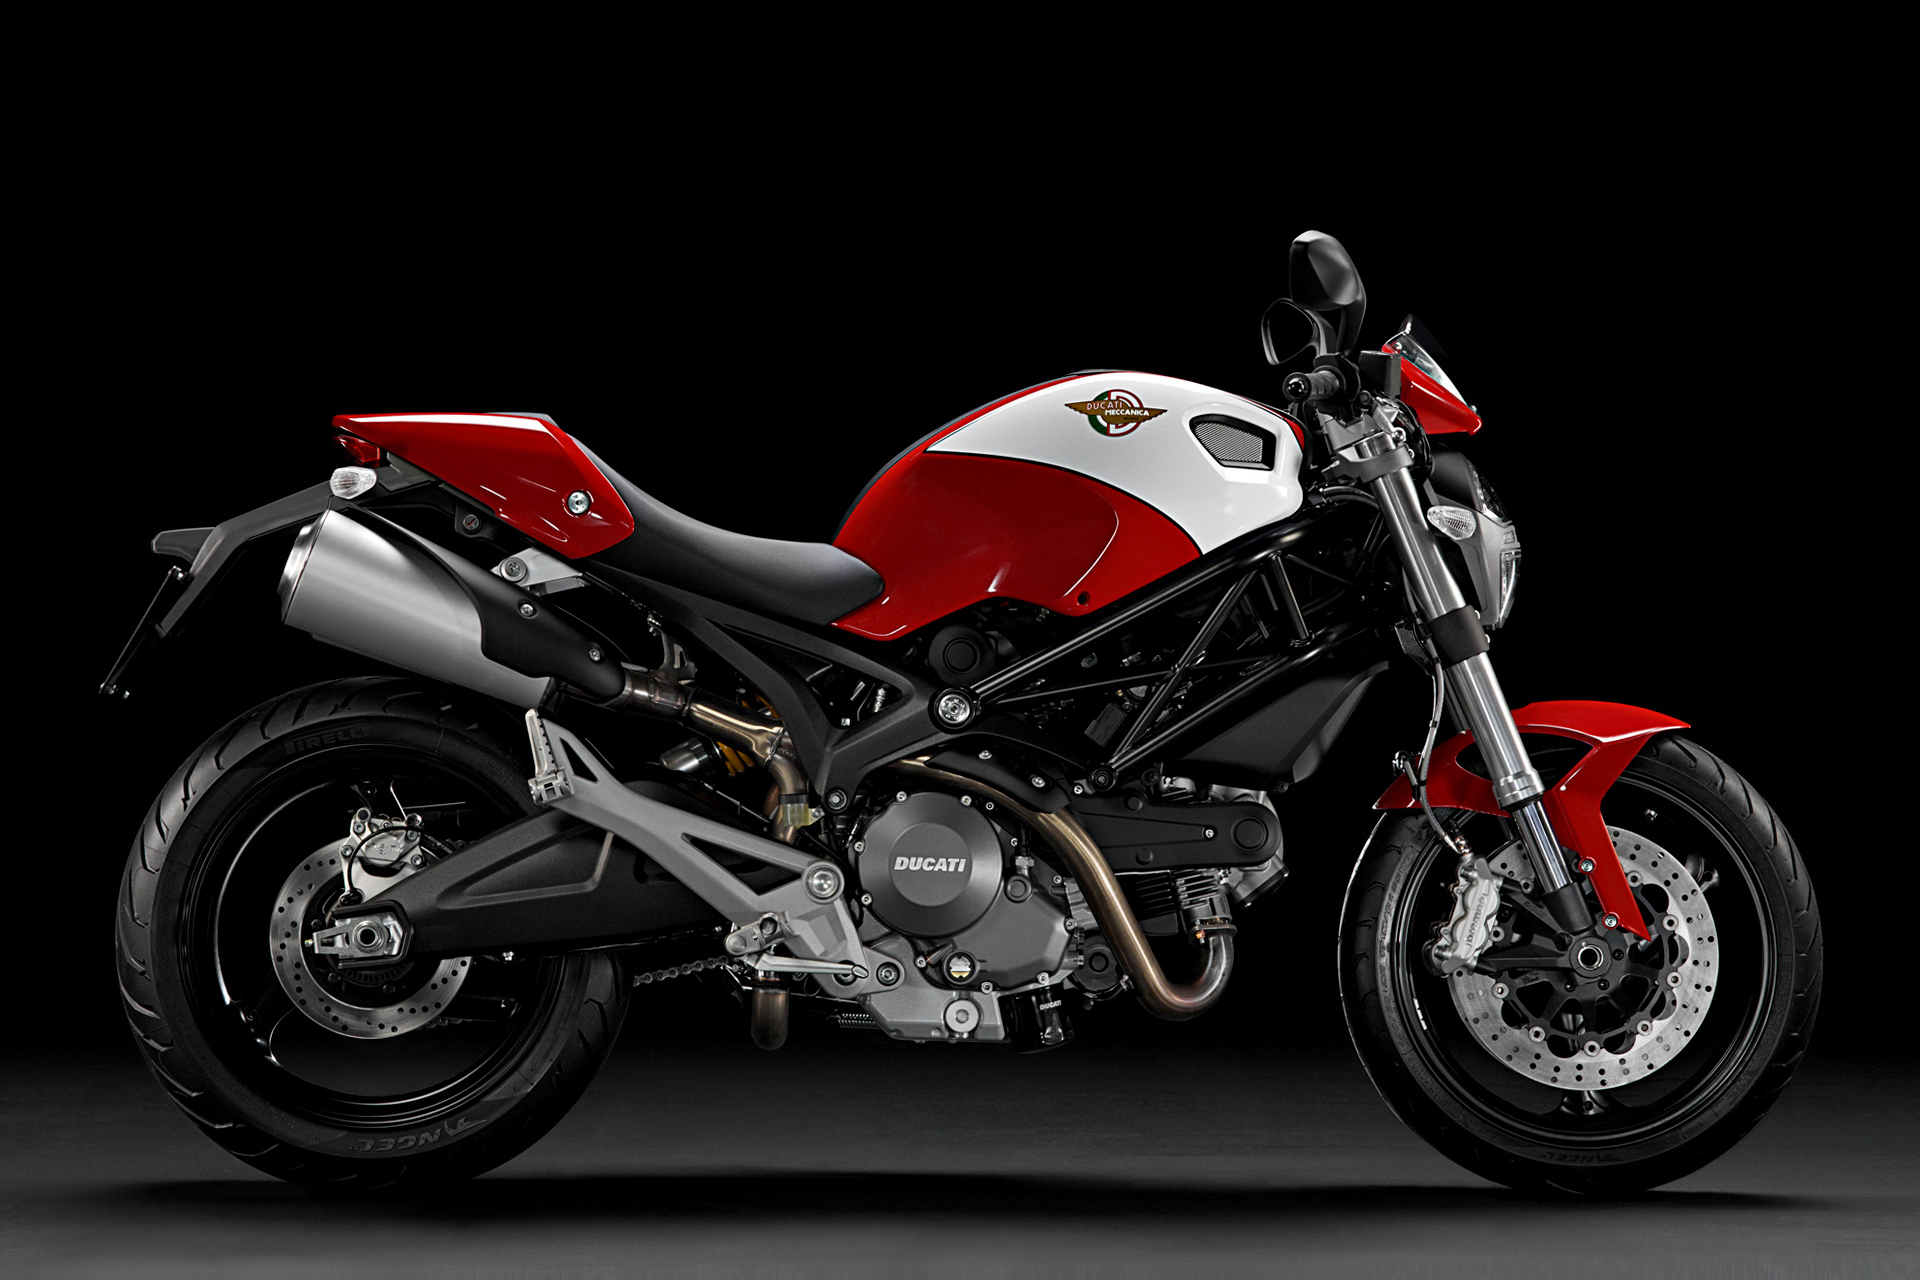 M20696 10S_LM-Ducati-Mach-1_C01S201920x1280